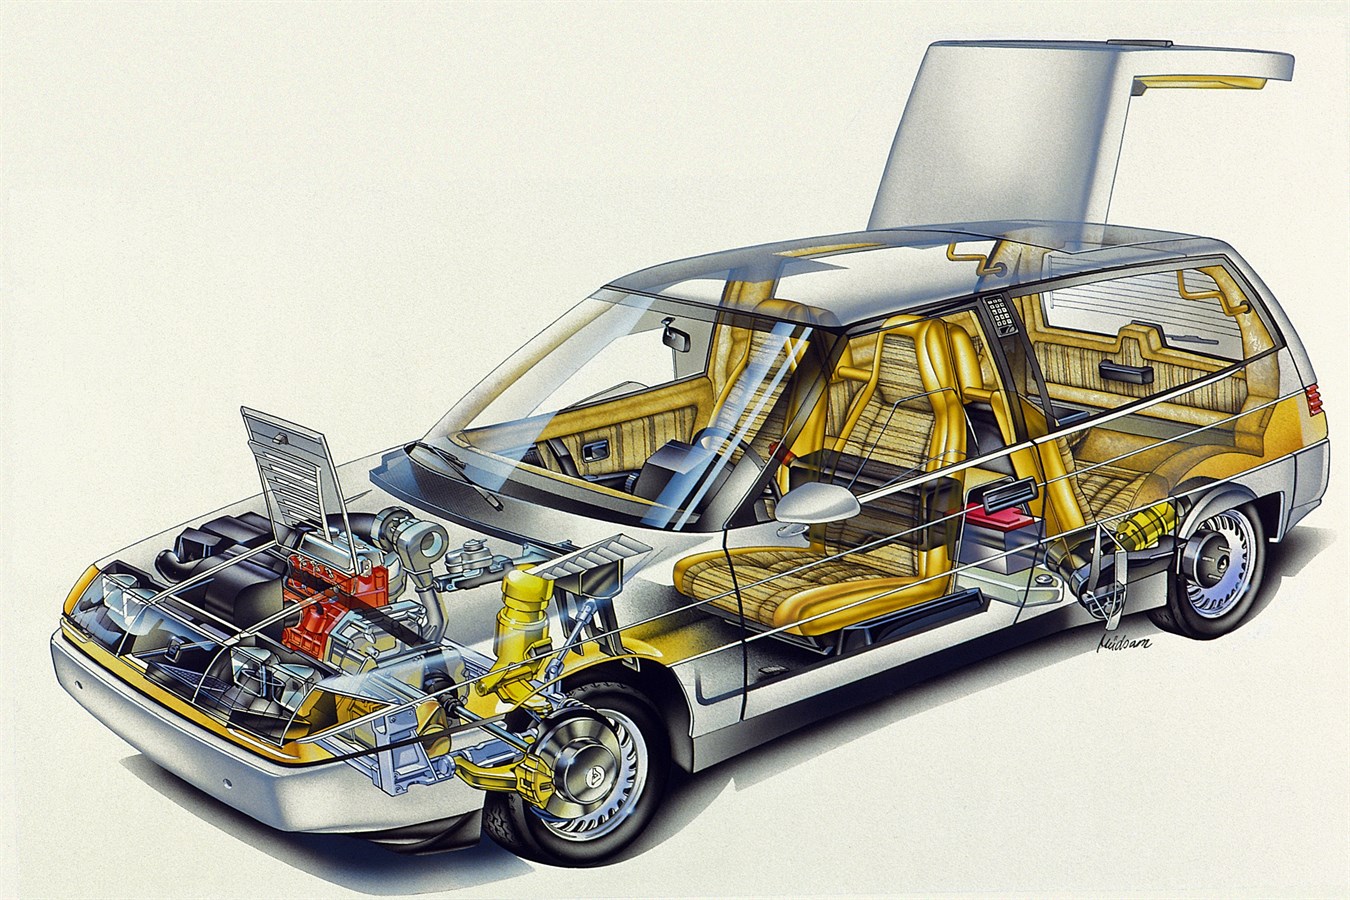 Nell'ambito del progetto componenti leggeri LCP2000 (Light Component Project), del 1983, venne costruita una serie di vetture dotate di vari motori, per provare alcuni tipi di carburanti. Il progetto LCP era stato avviato anche per collaudare una serie di materiali più leggeri, fra cui alluminio e magnesio